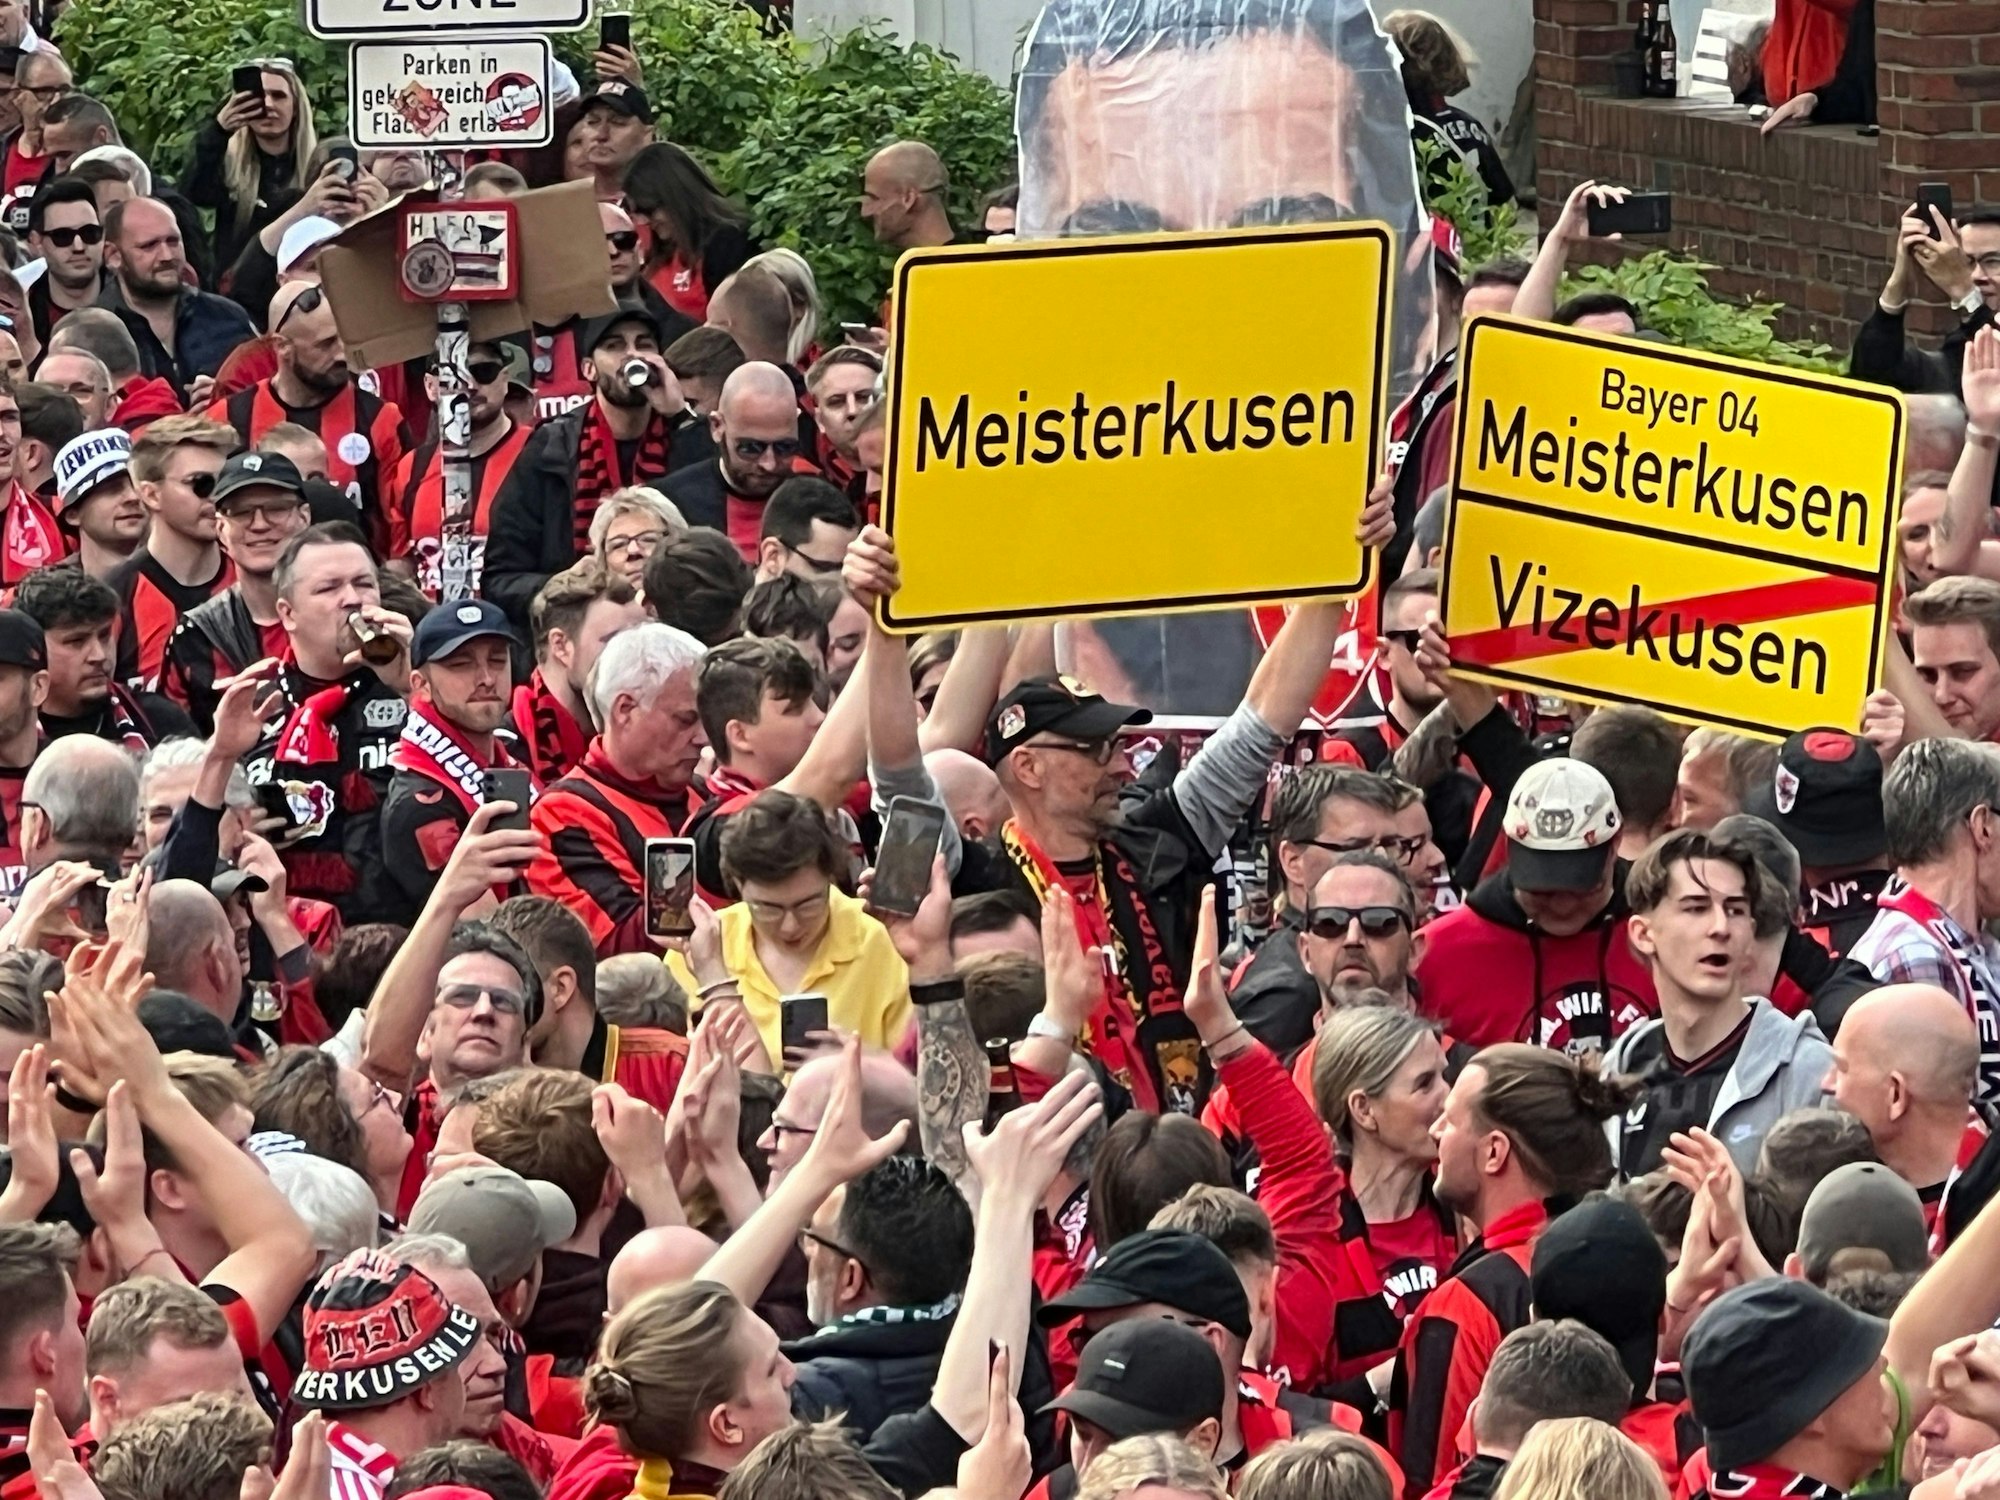 Lauter Fans mit Schildern „Meisterkusen“ oben und „Vizekusen“ durchgestrichen unten.